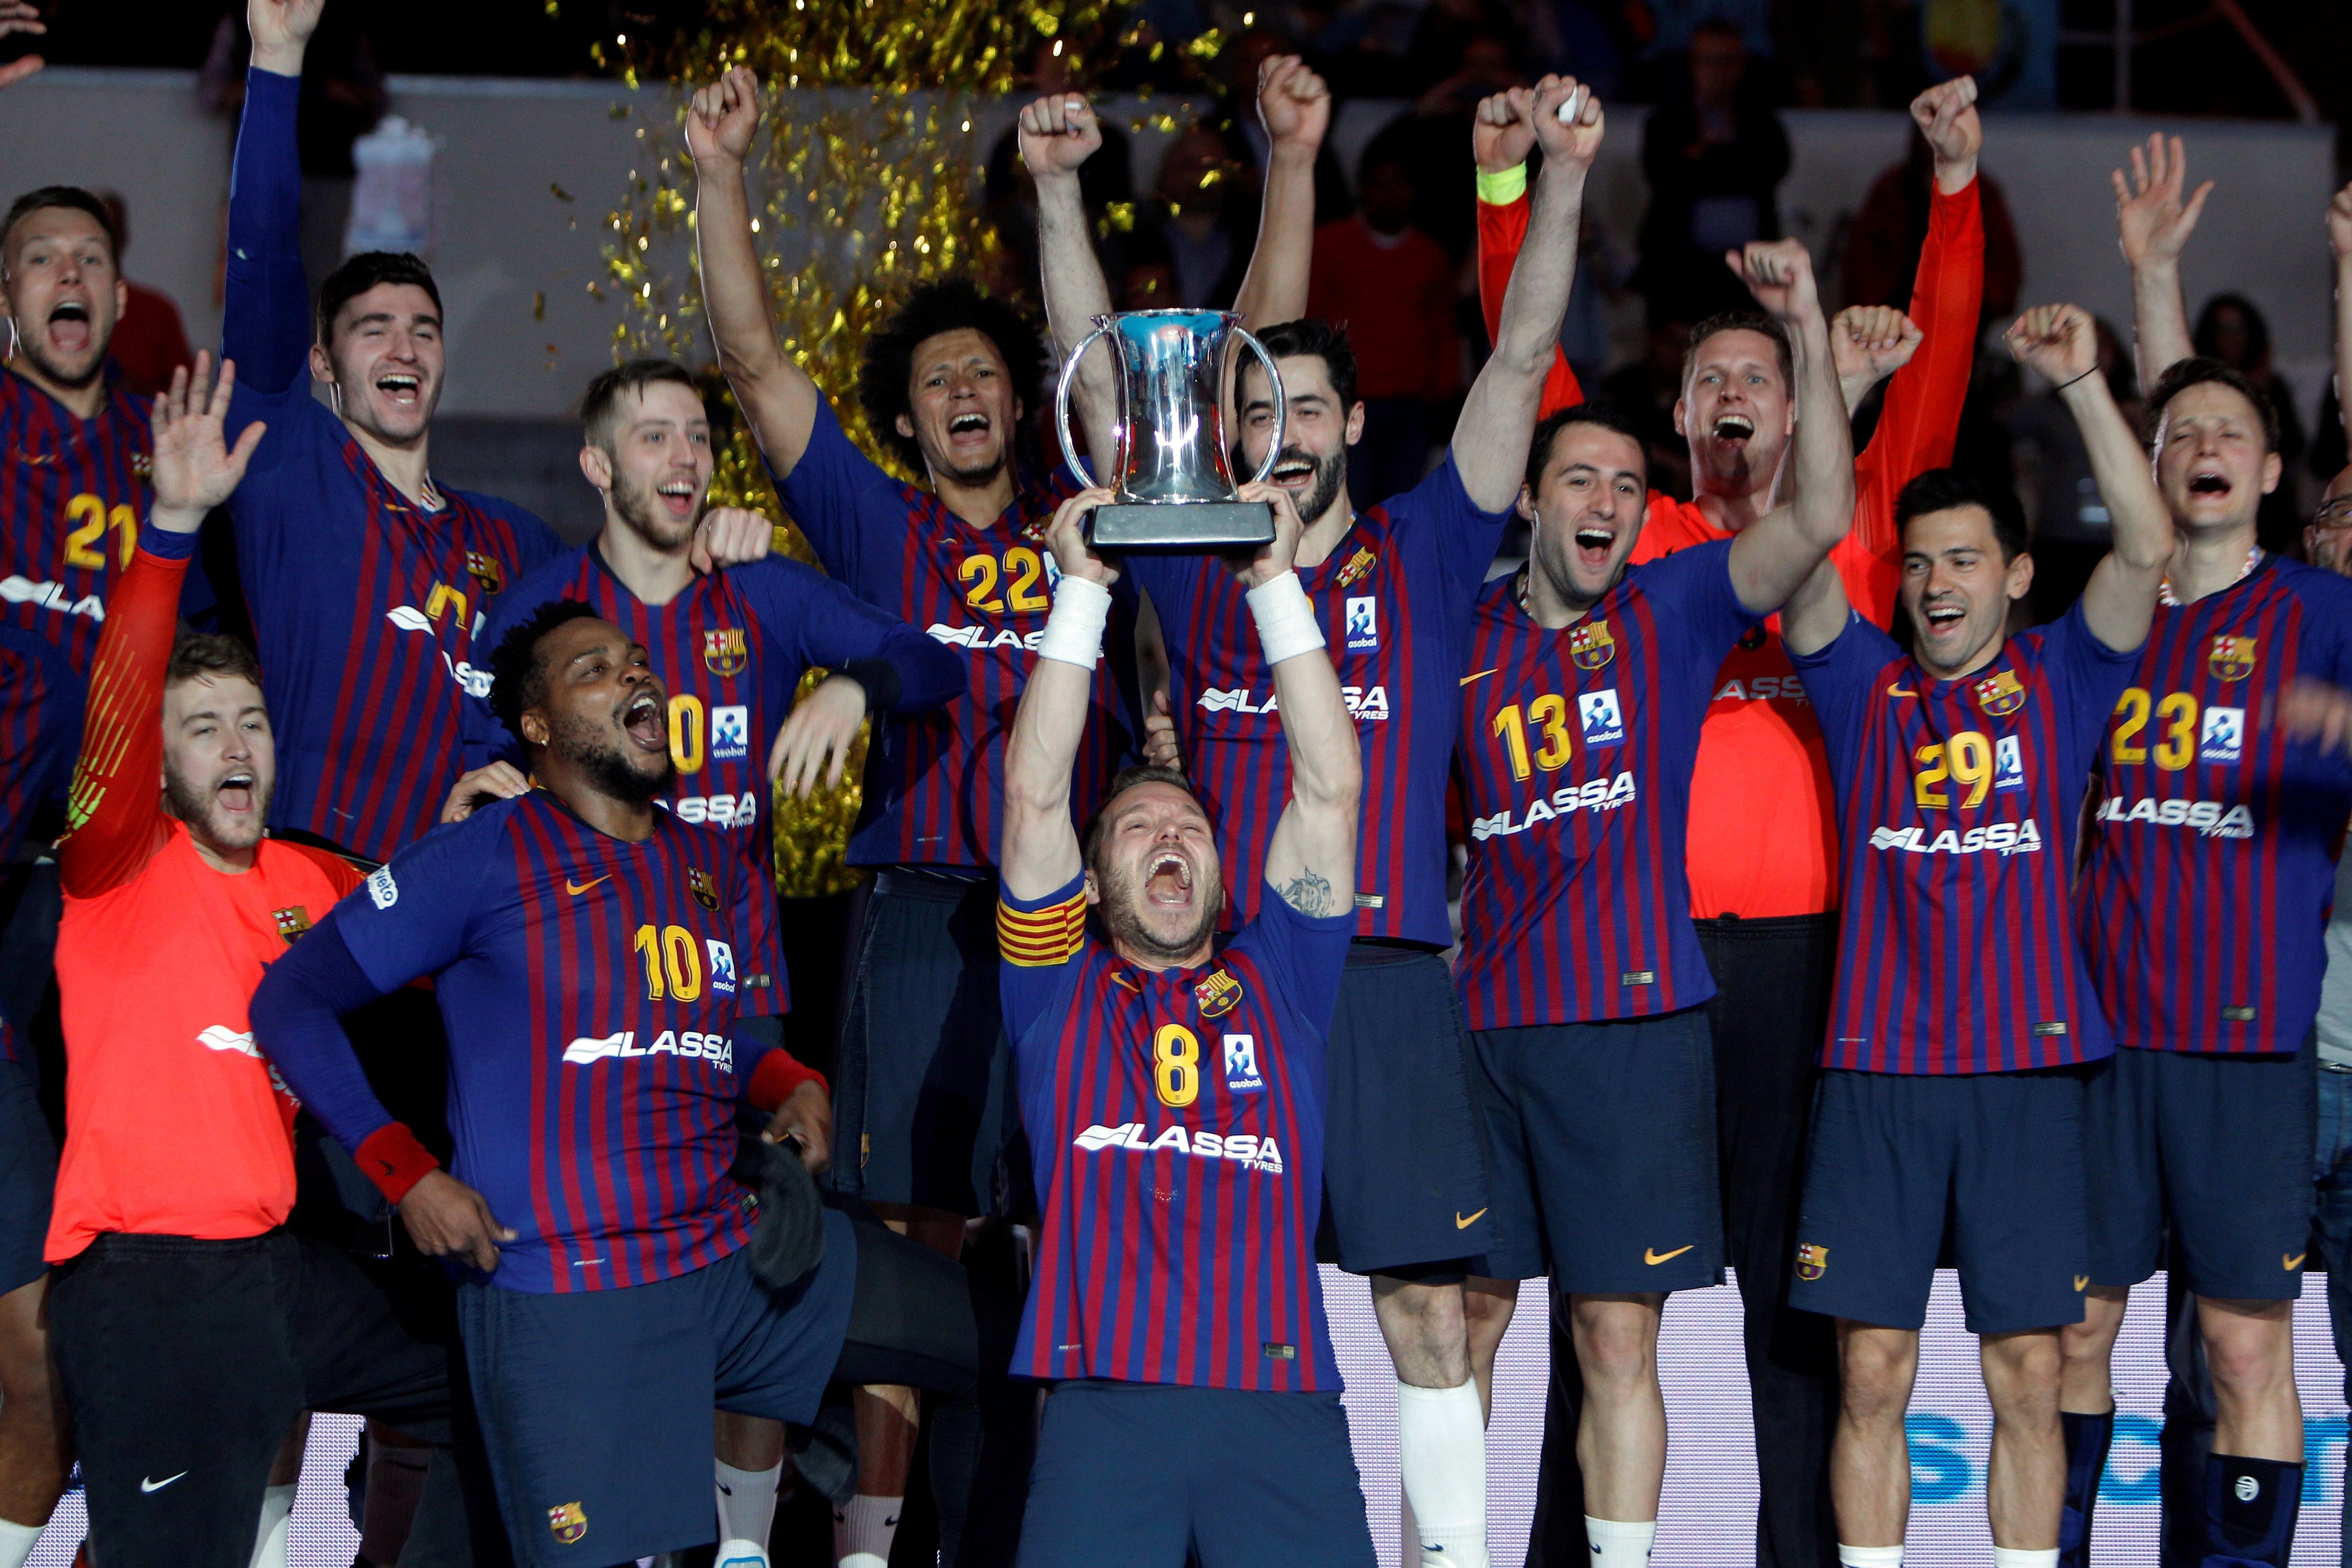 El Barça sigue sin tener rival y gana la sexta Copa consecutiva (34-18)